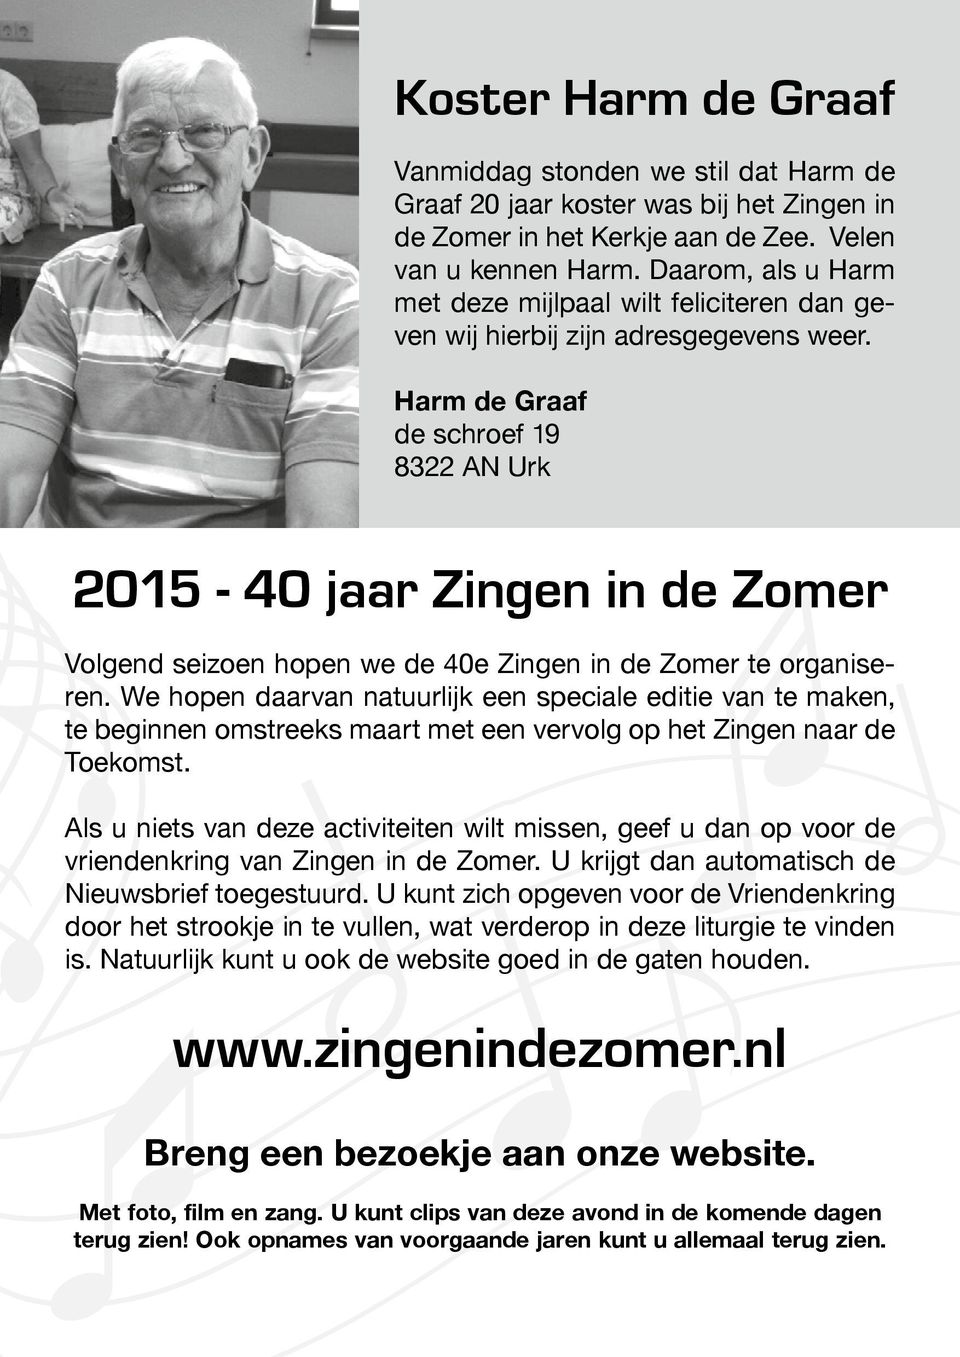 Harm de Graaf de schroef 19 8322 AN Urk 2015-40 jaar Zingen in de Zomer Volgend seizoen hopen we de 40e Zingen in de Zomer te organiseren.